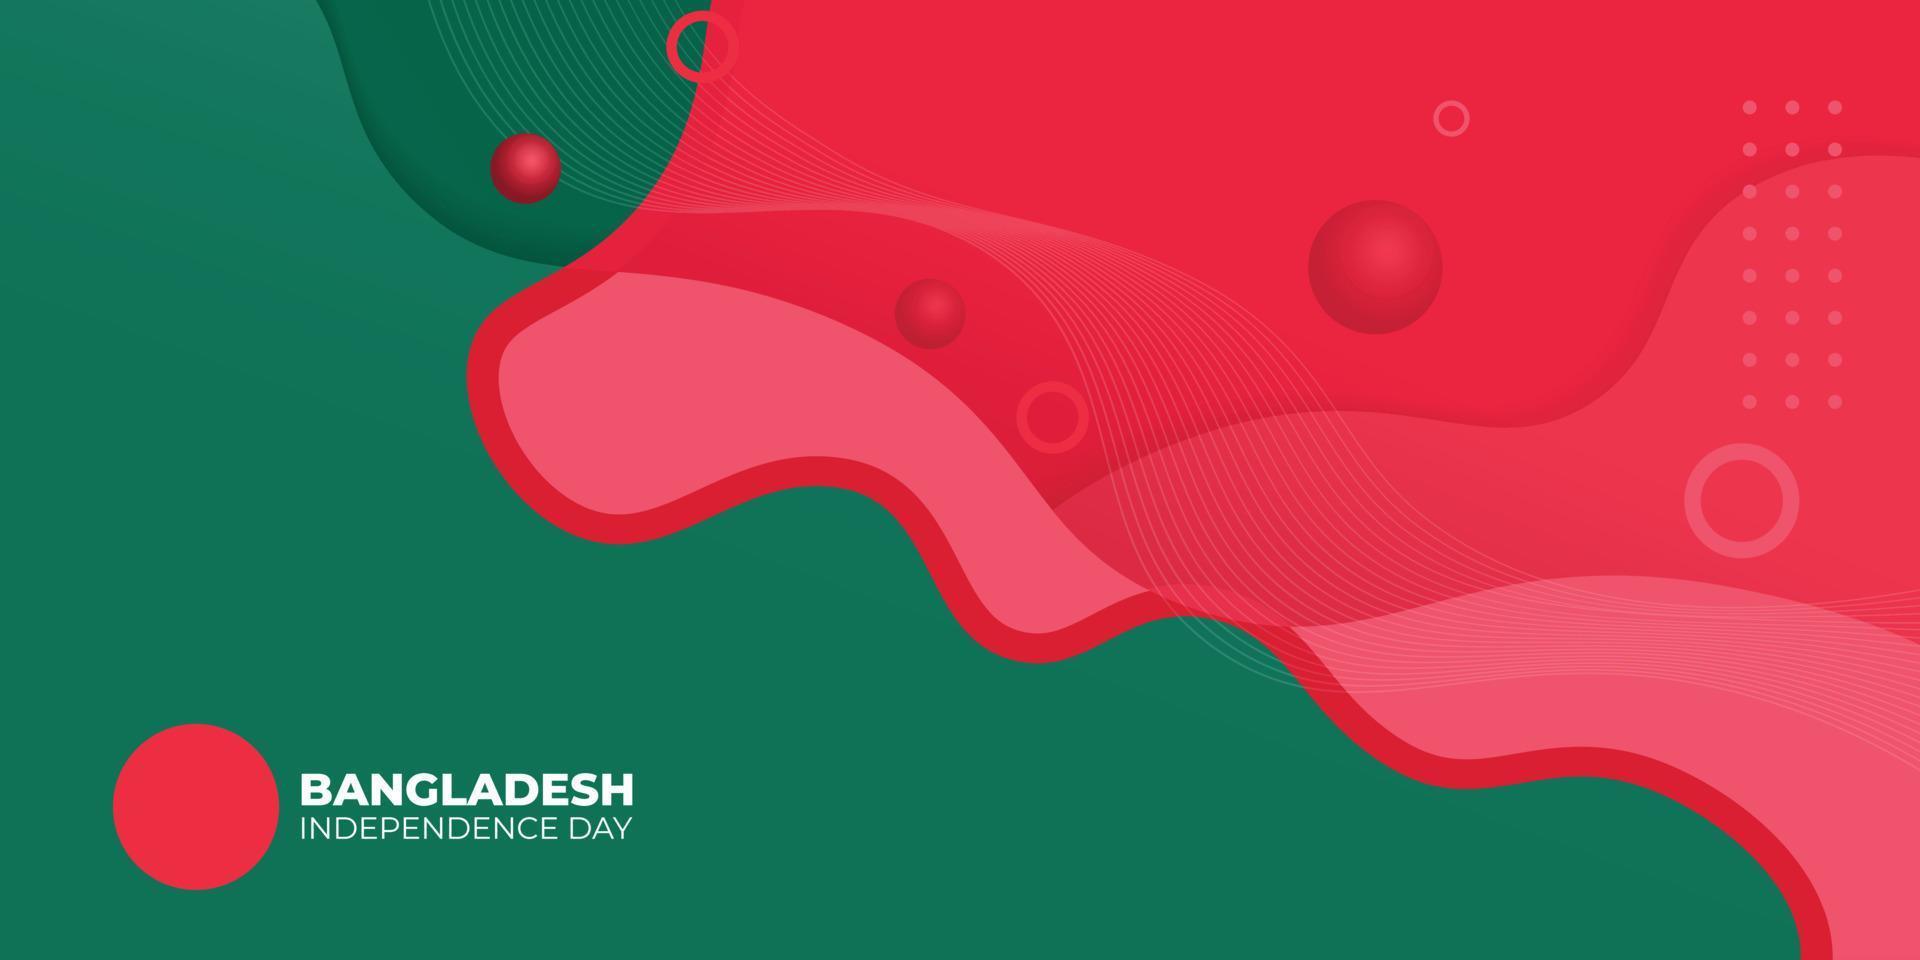 día de la independencia de bangladesh con diseño de fondo verde y rojo. vector